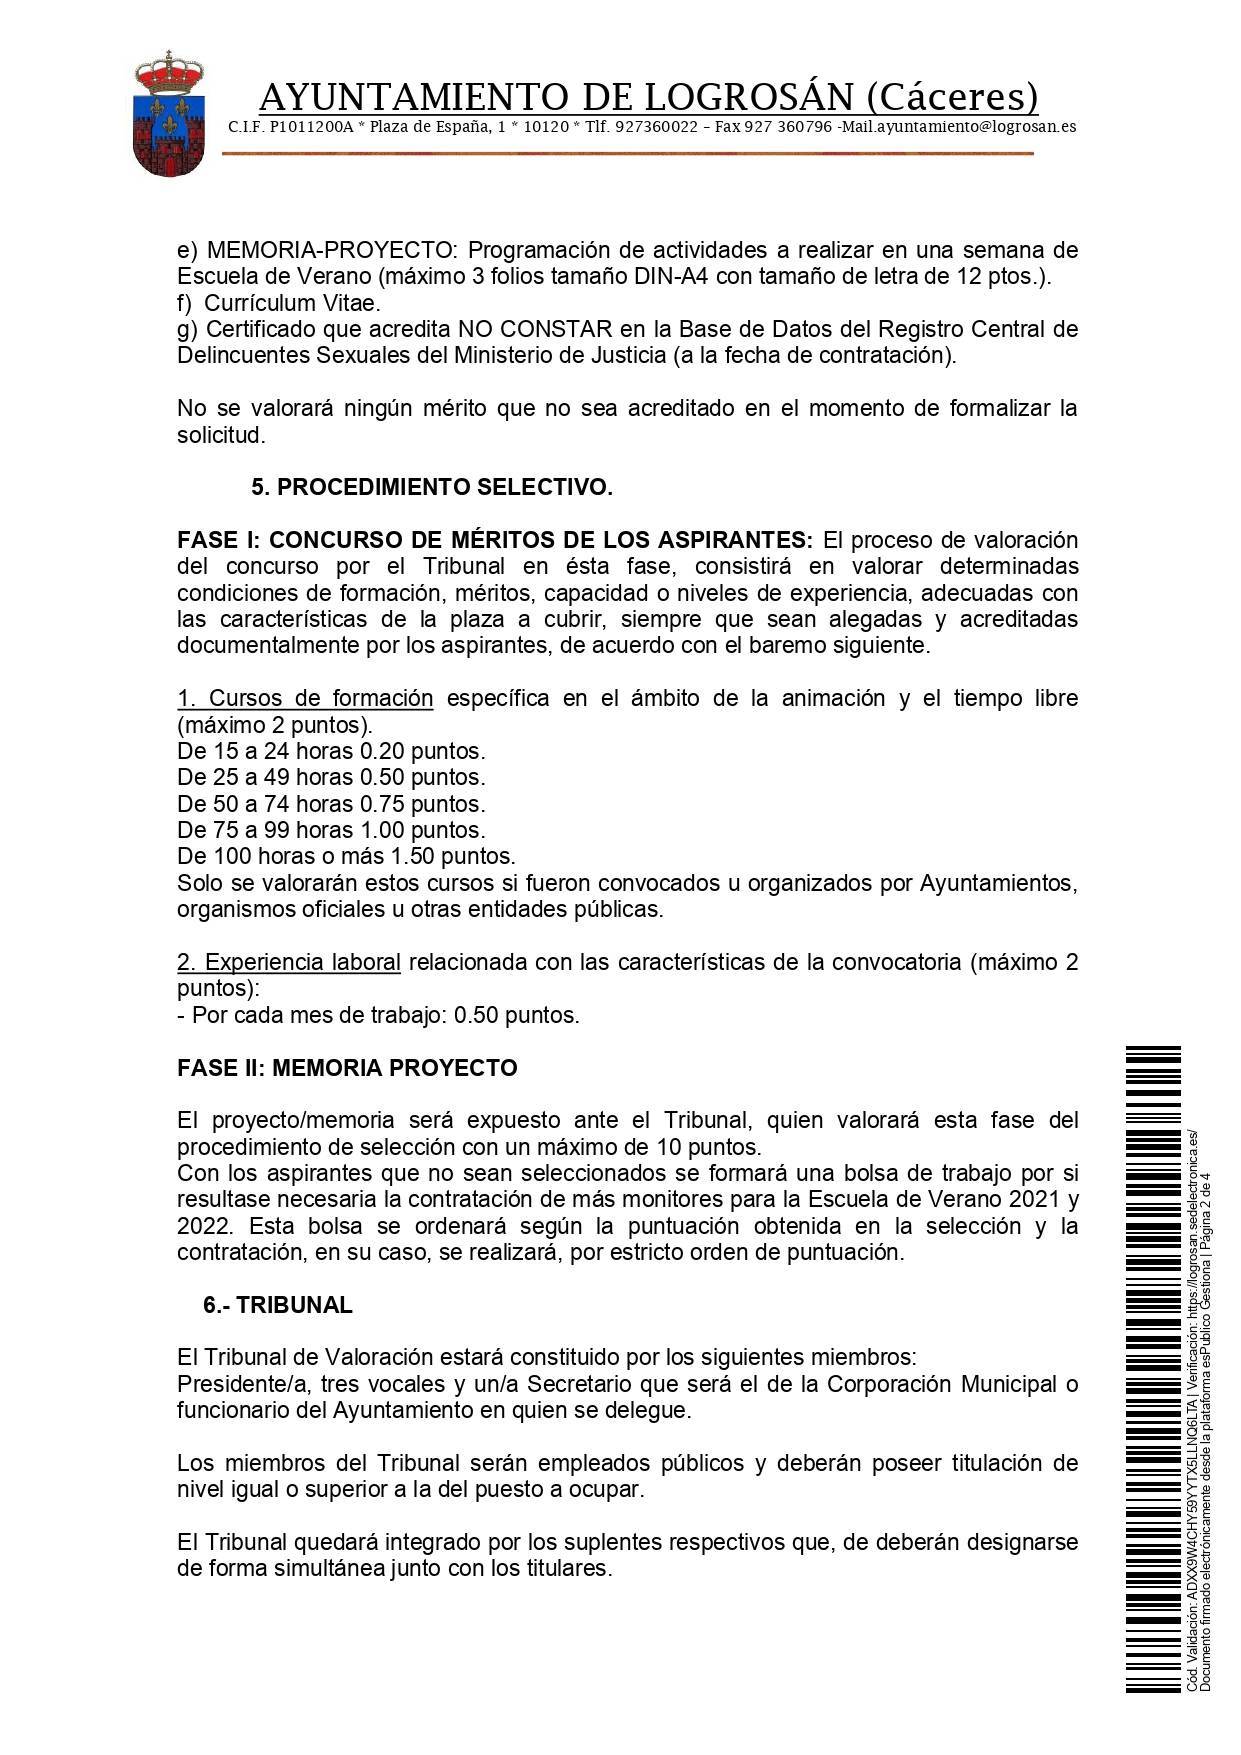 Monitores para la escuela de verano (2021-2022) - Logrosán (Cáceres) 2